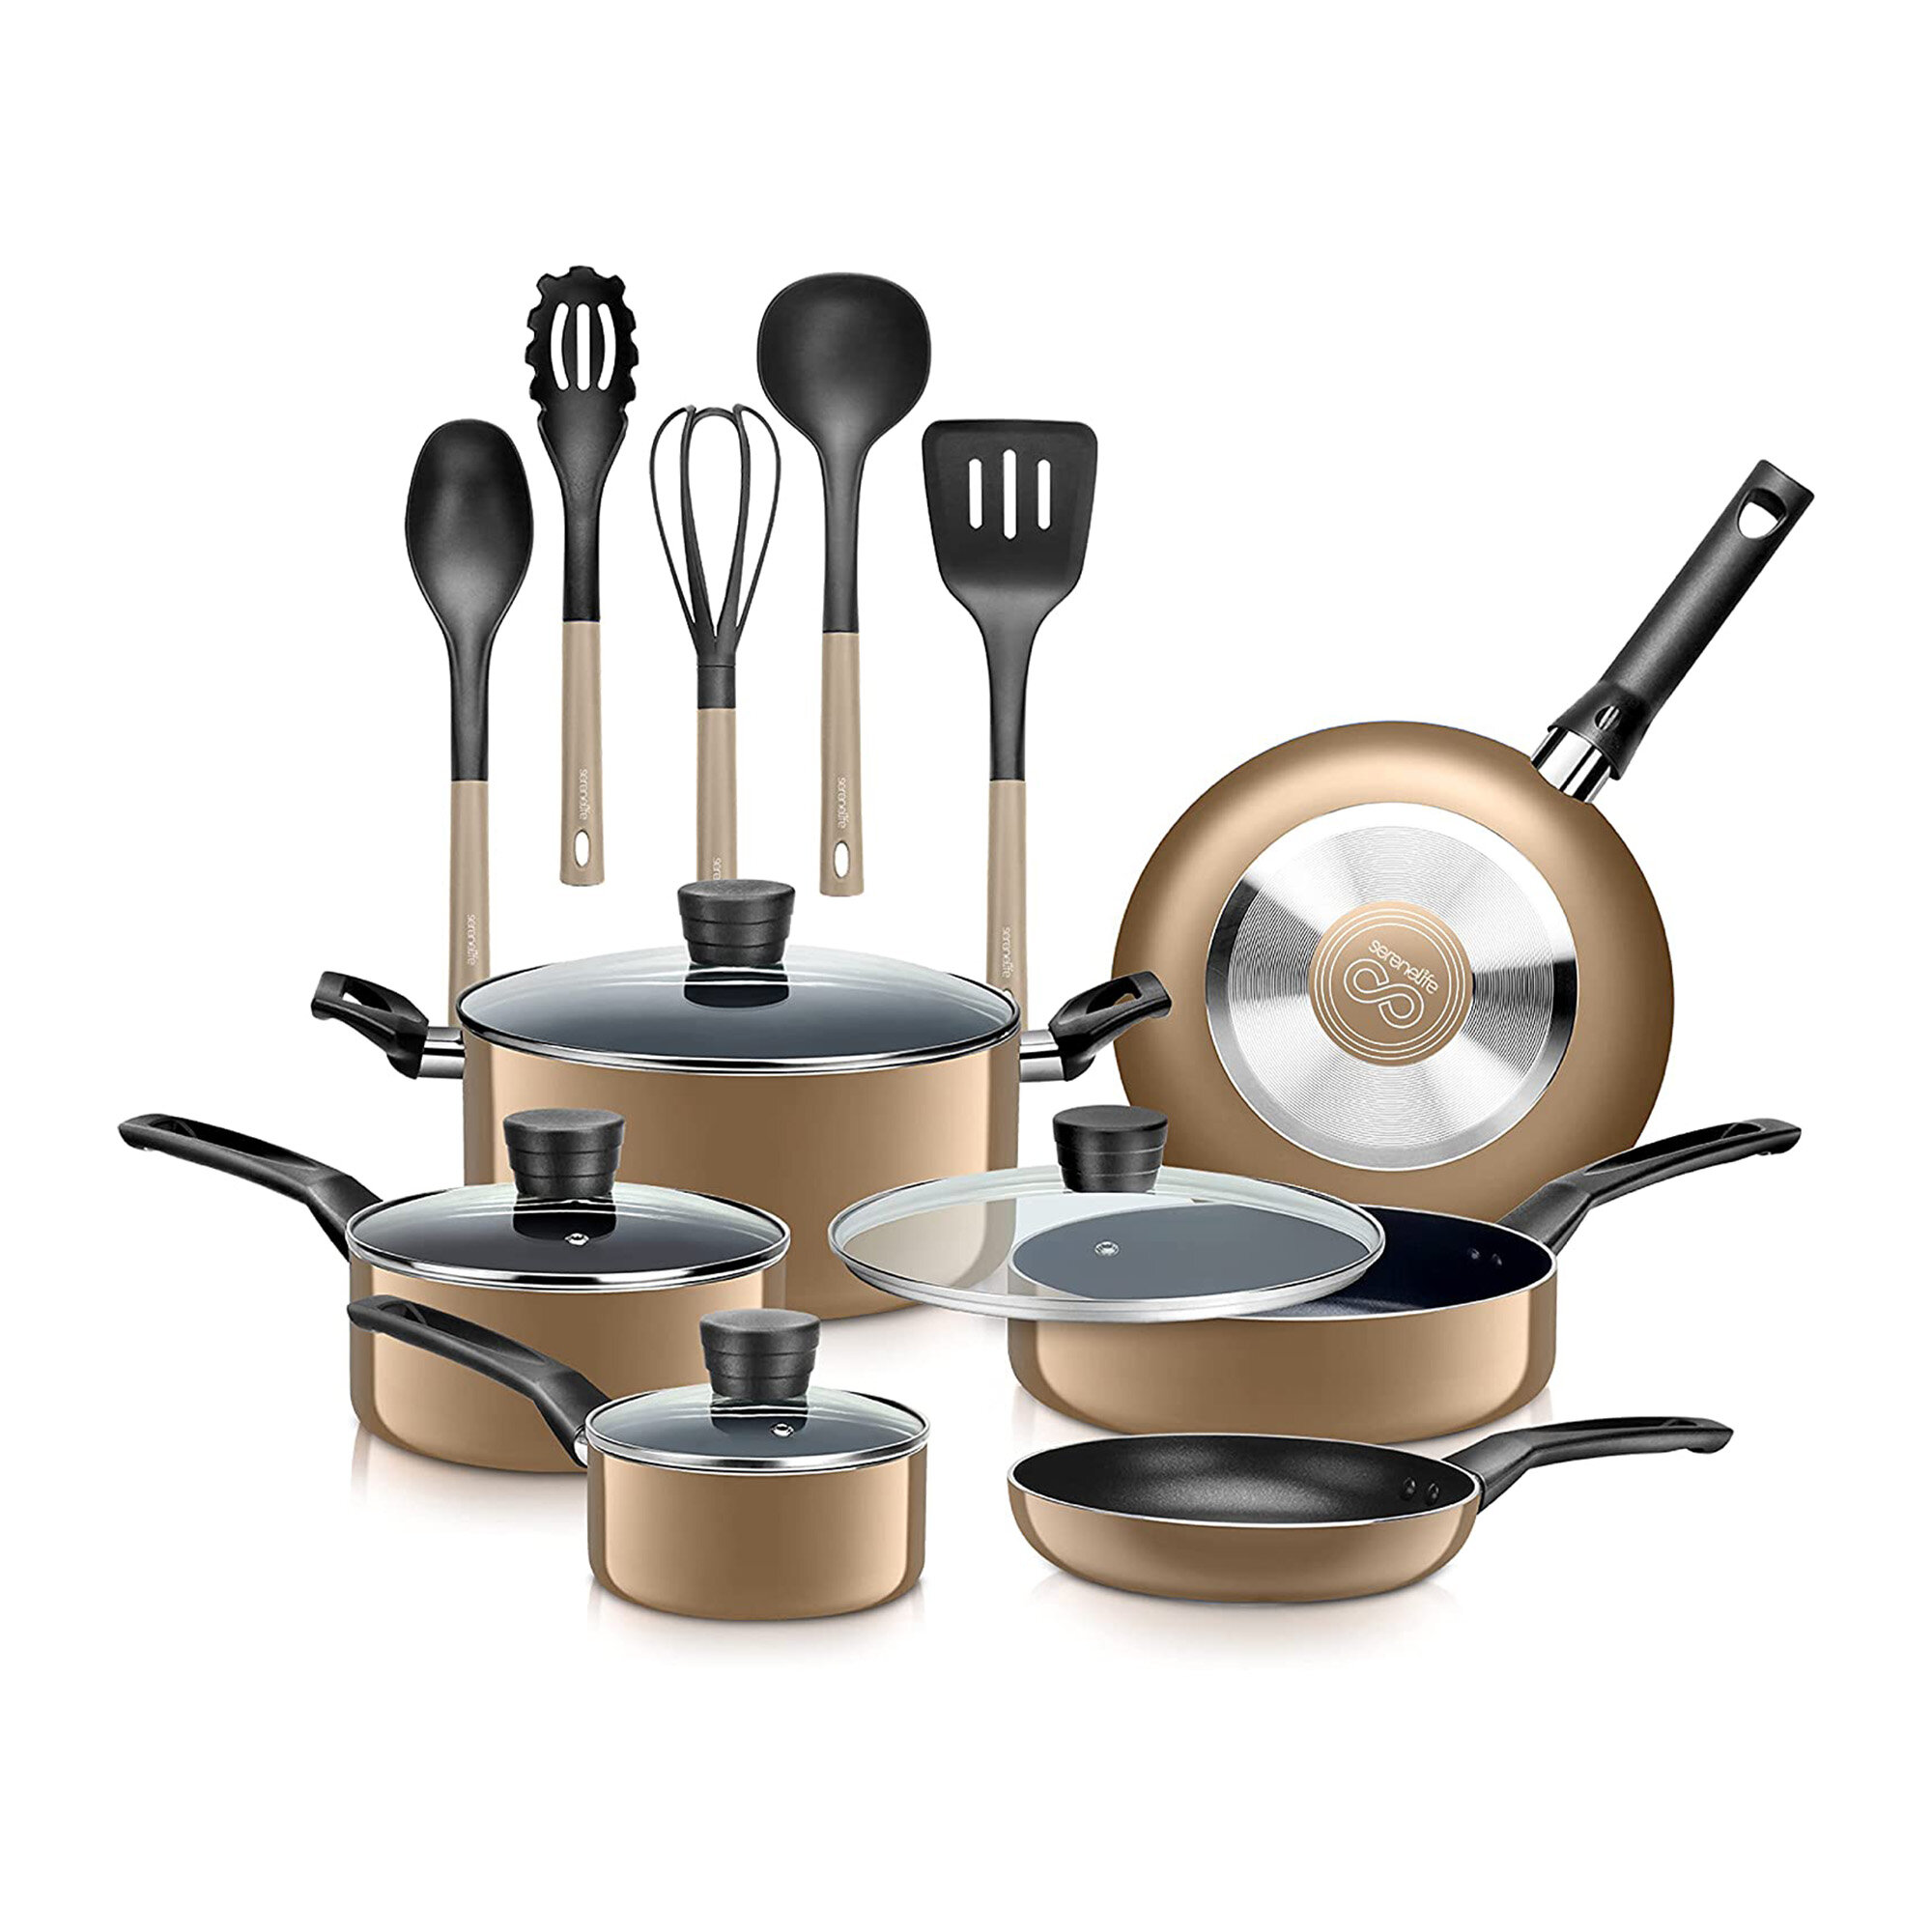 https://assets.wfcdn.com/im/84844954/compr-r85/1969/196967244/15-piece-non-stick-aluminum-cookware-set.jpg